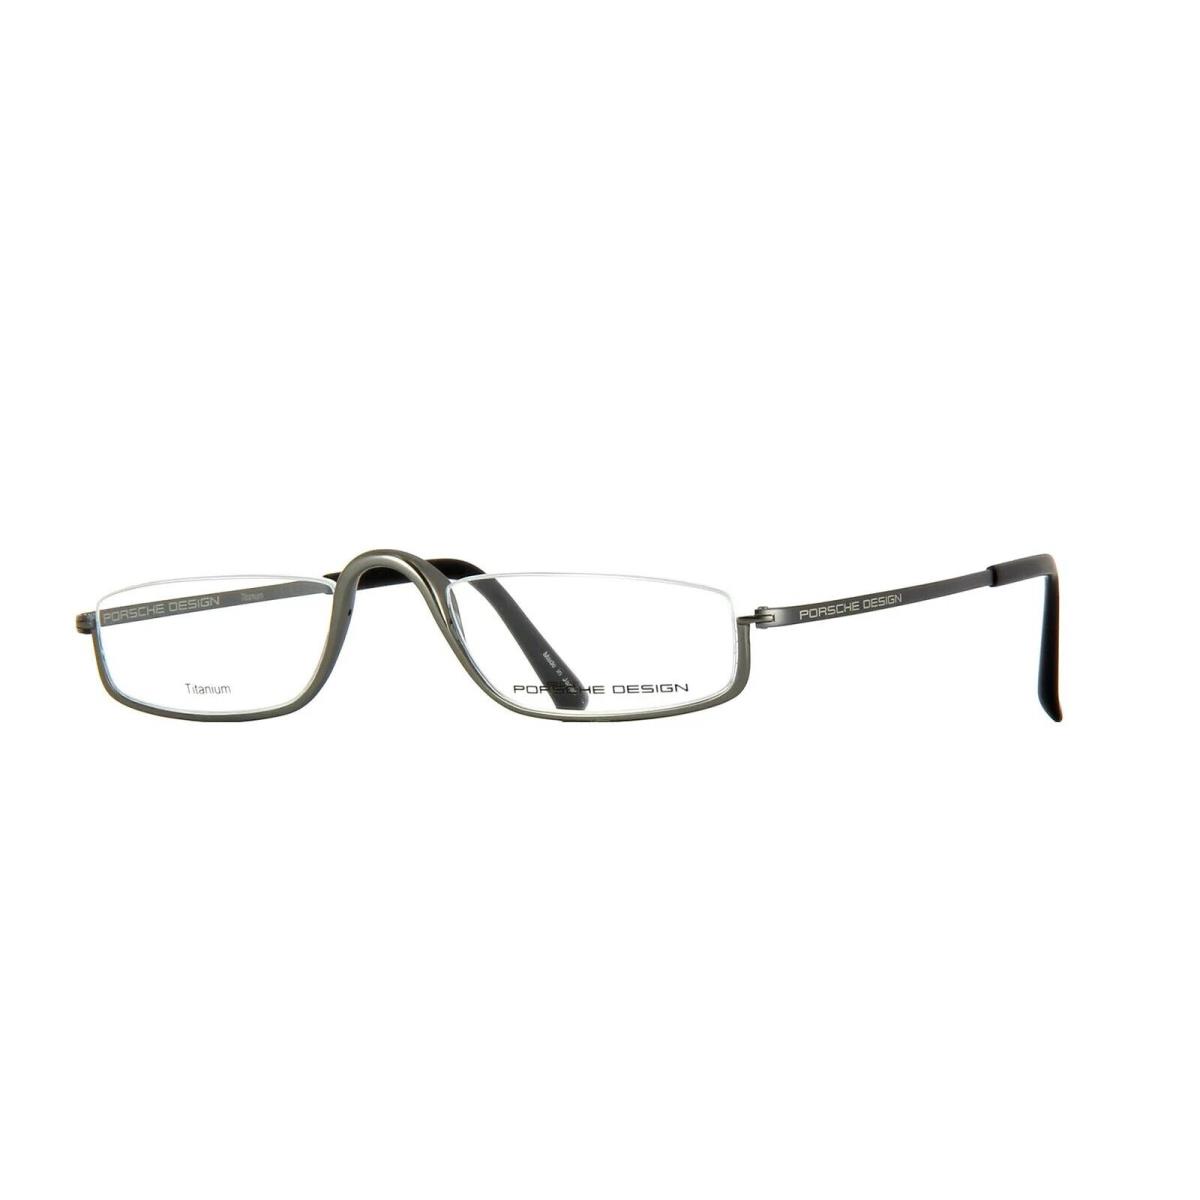 Porsche Design P8002 Eyeglasses